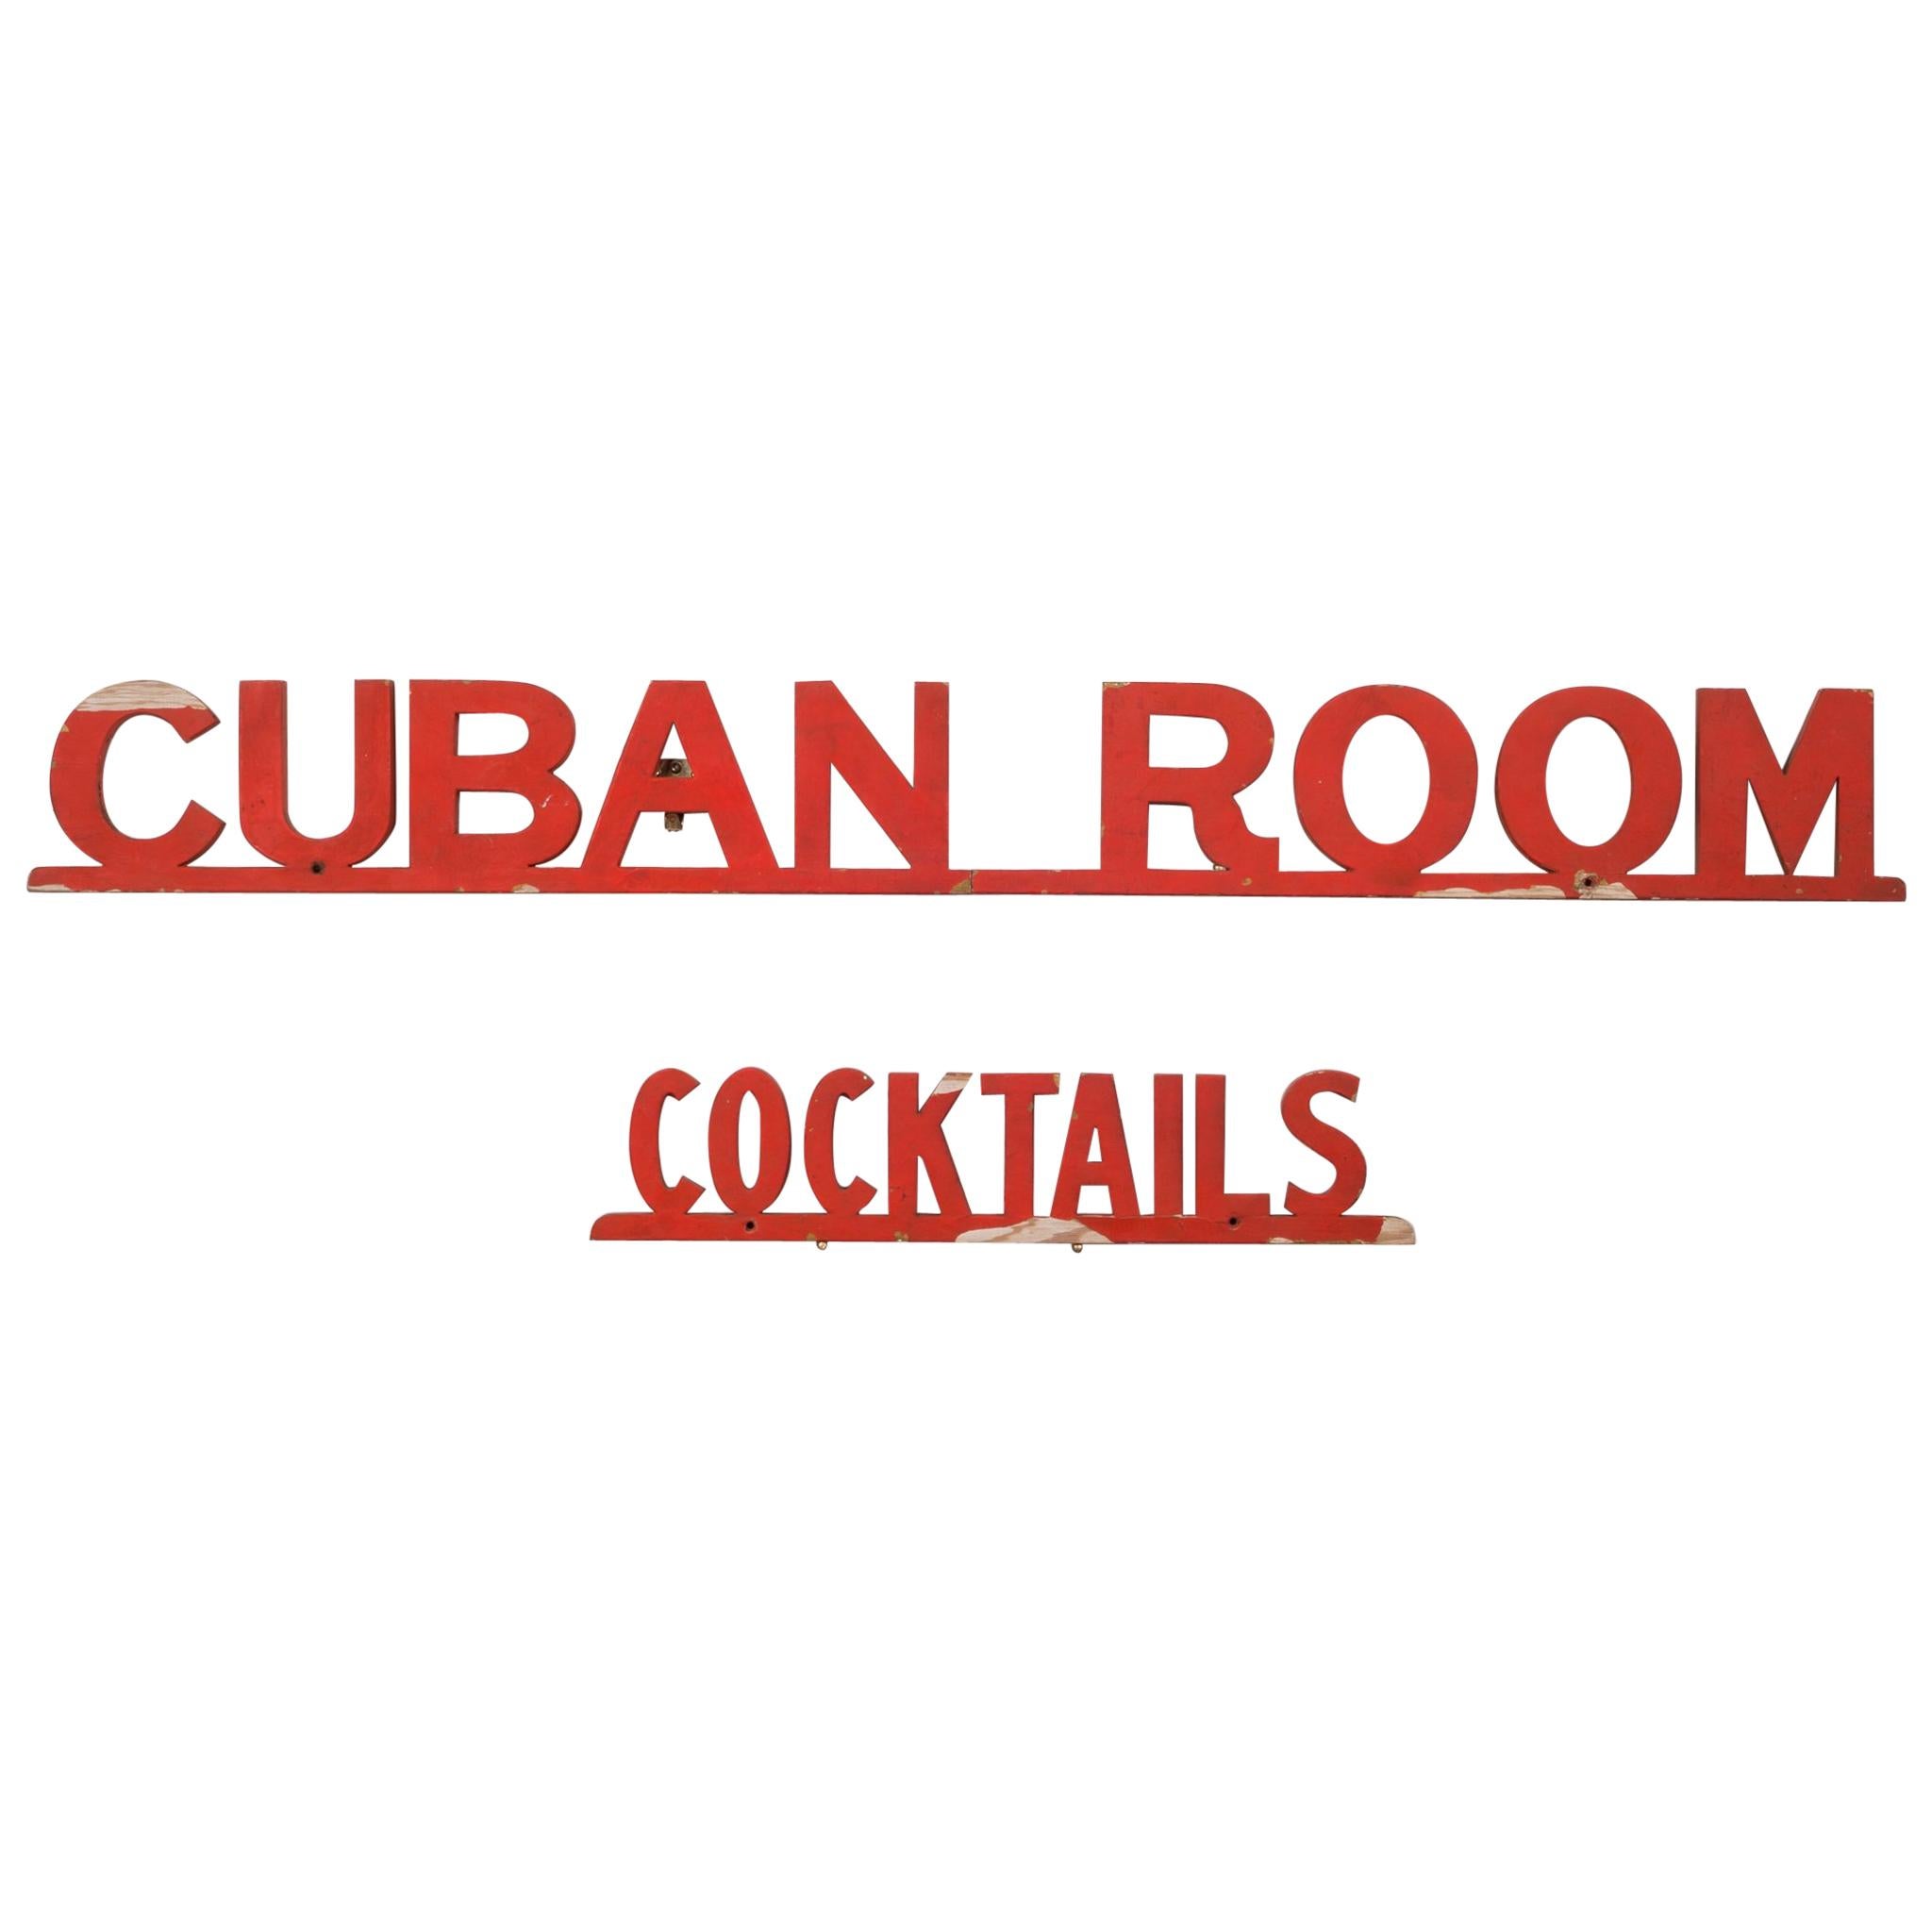 "Cuban Room Cocktails" San Francisco Club Sign, circa 1920